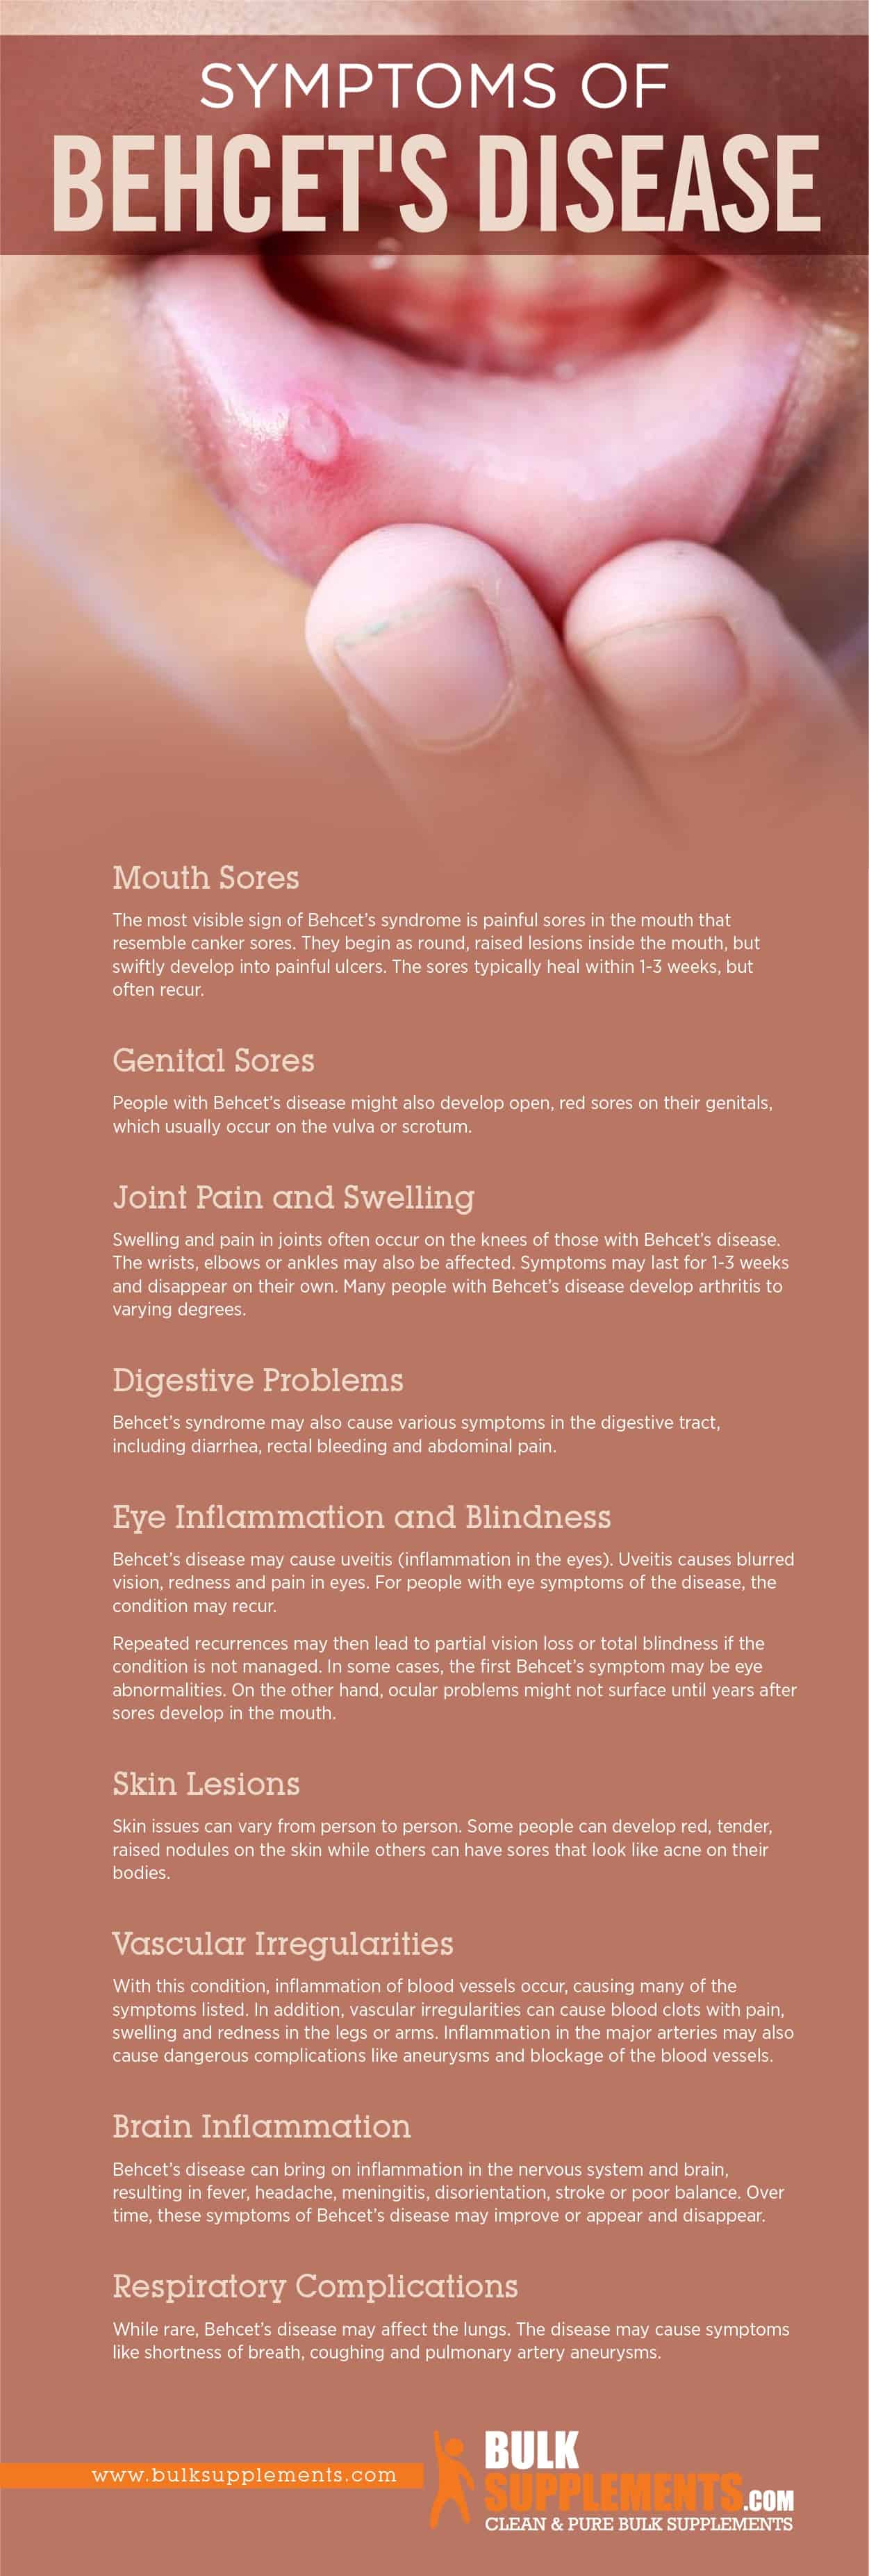 Symptoms of Behcet's Disease